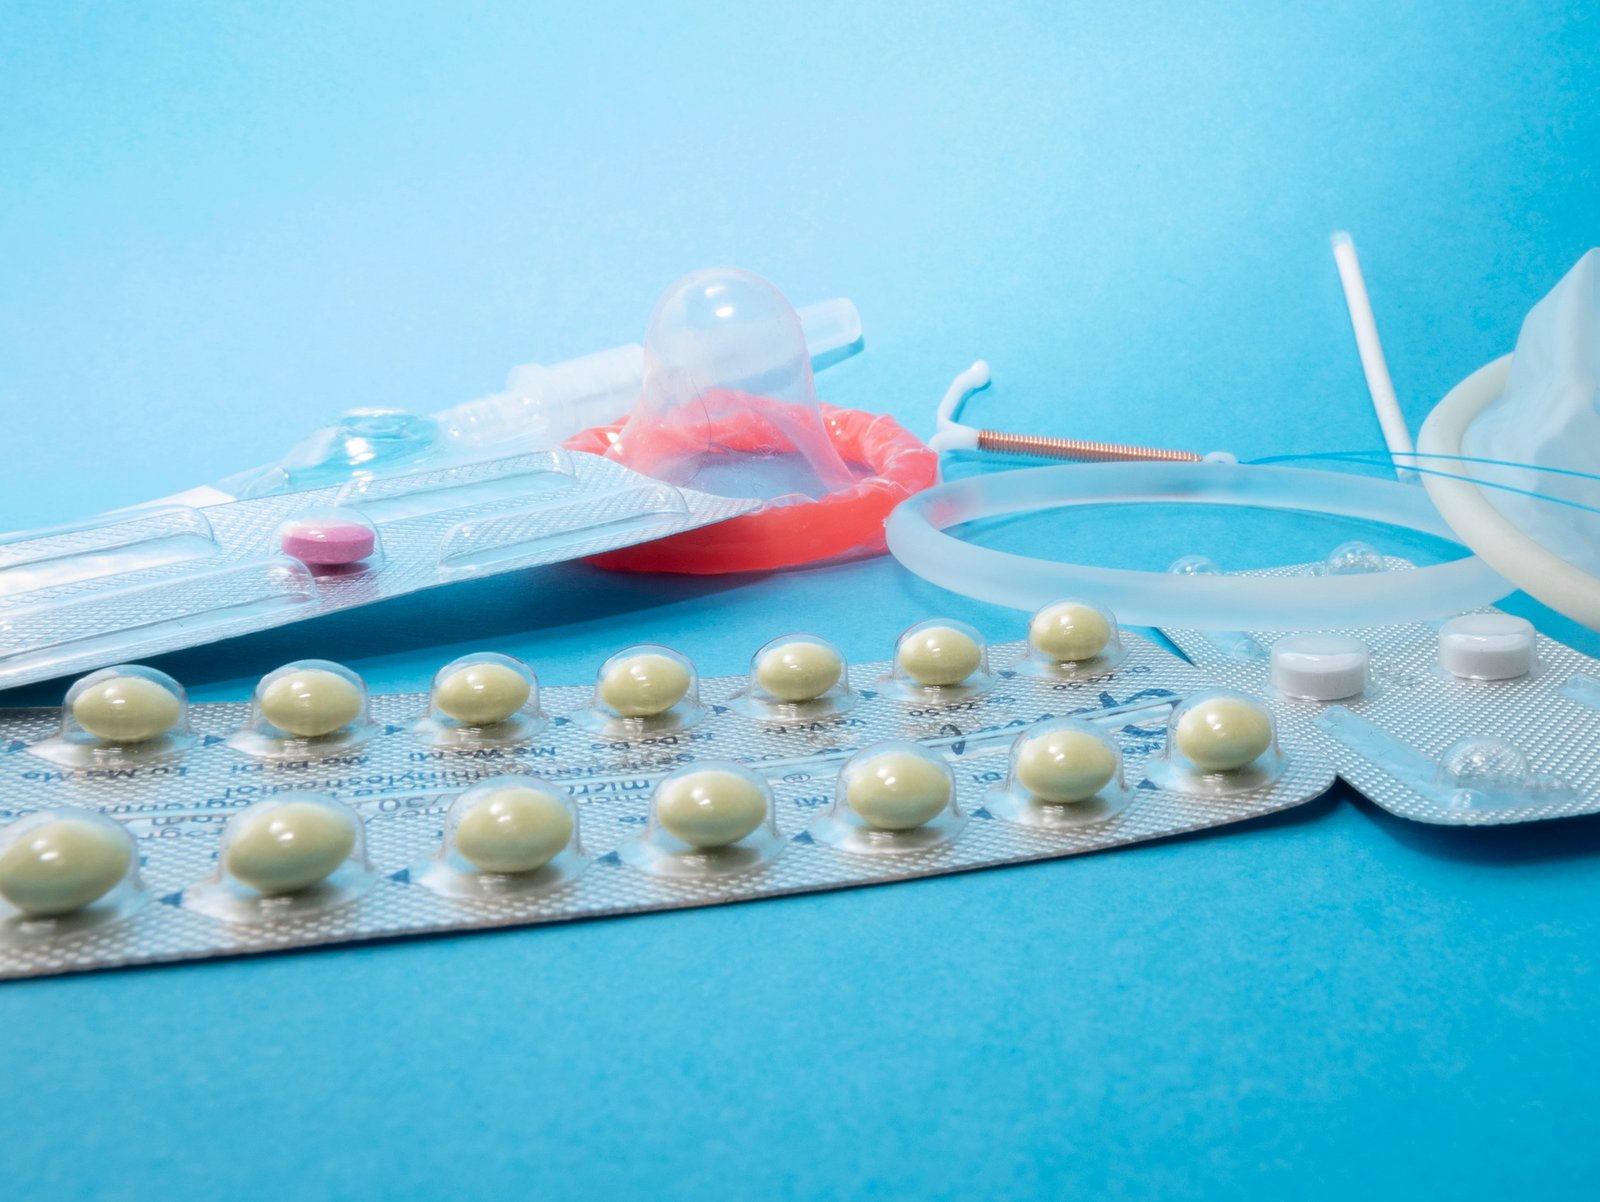 Kondóm, antikoncepčná pilulka a iné antikoncepčné prostriedky